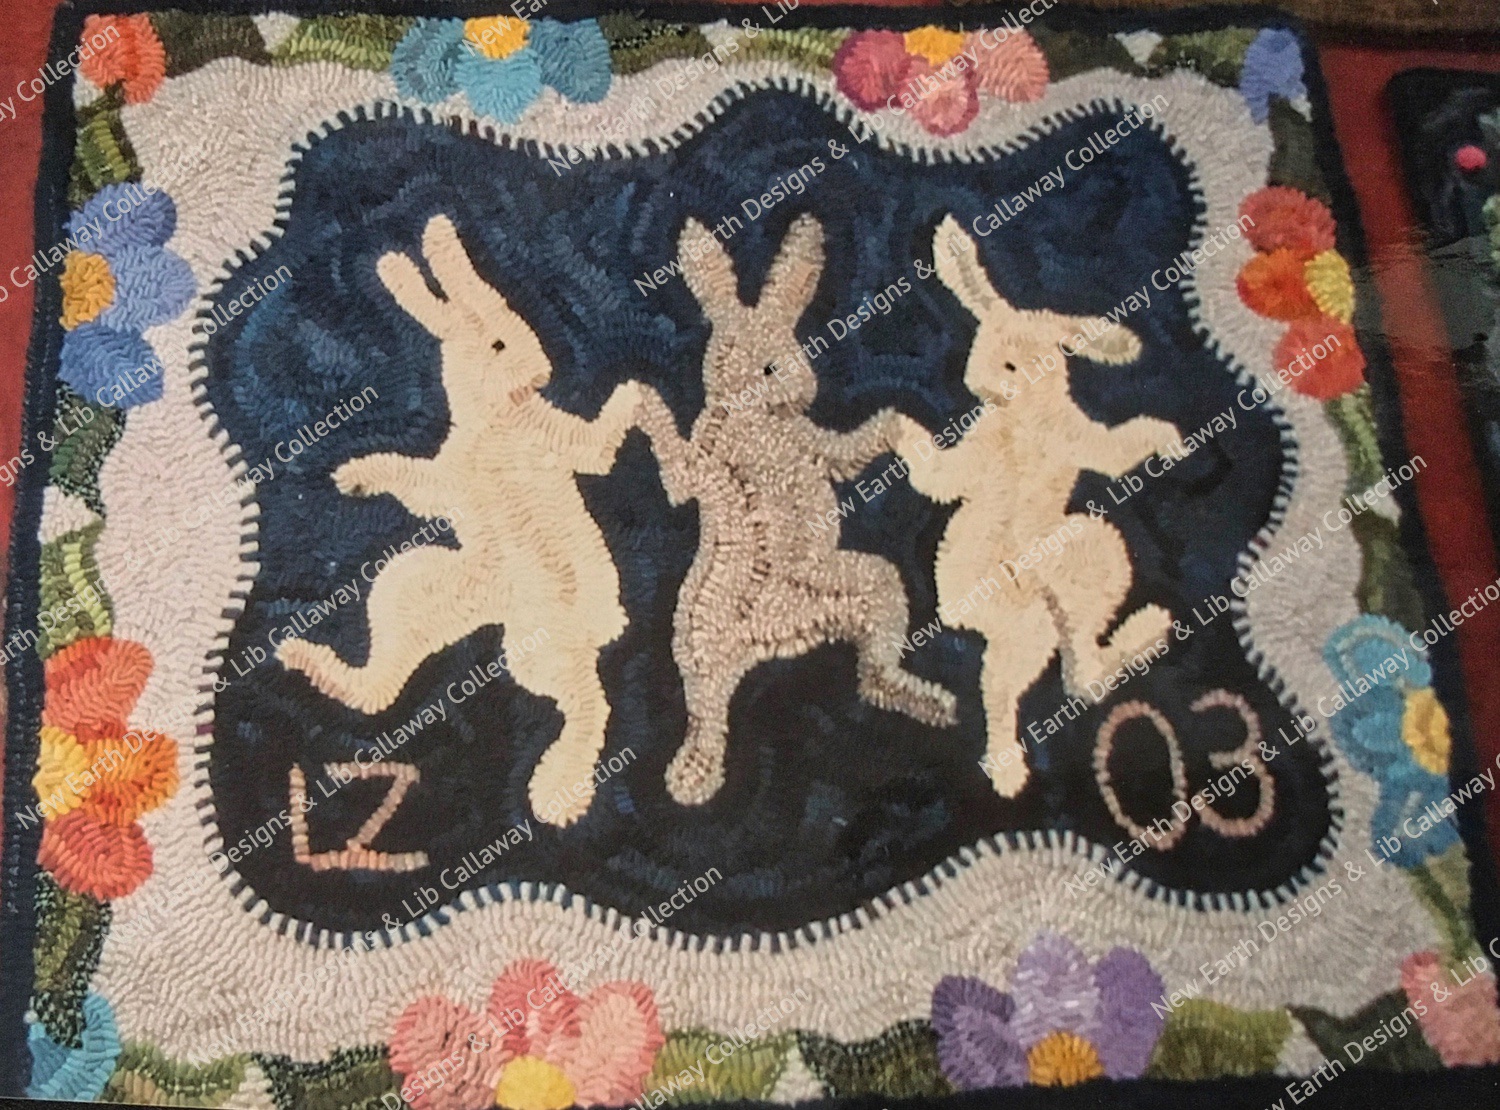 Three Rabbits #208